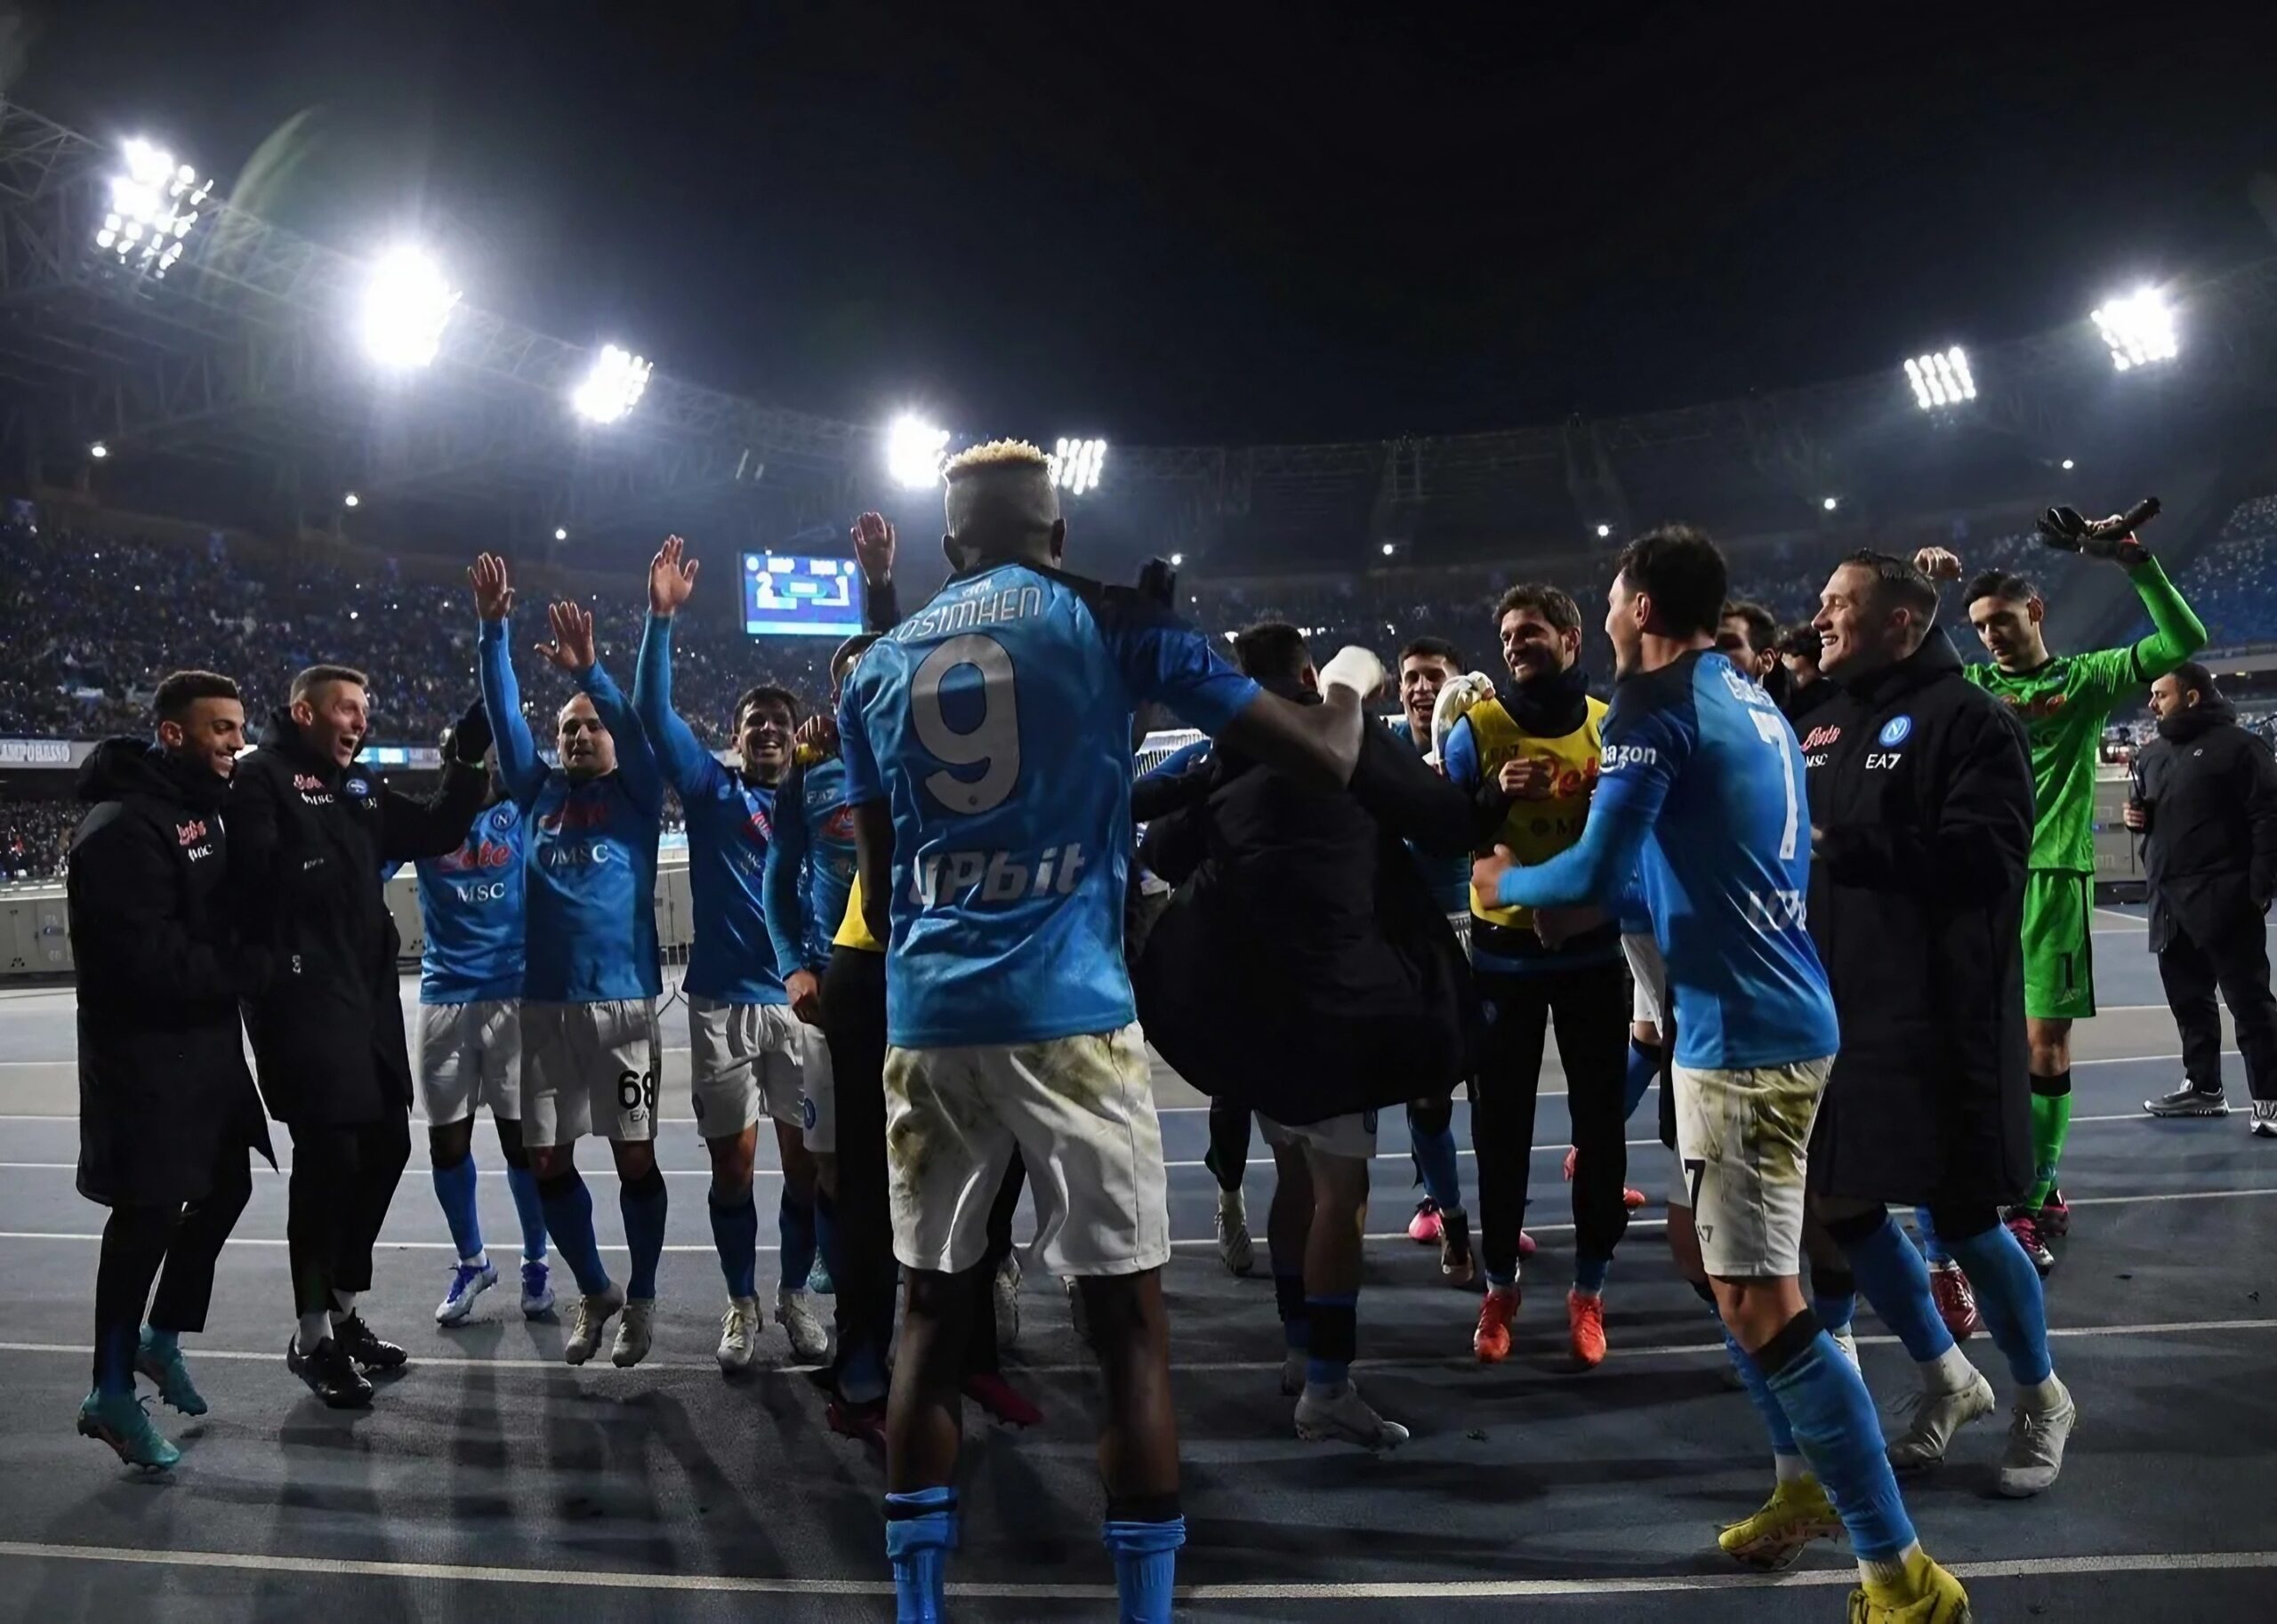 لاعبو فريق SSC Napoli يحتفلون بعد الفوز